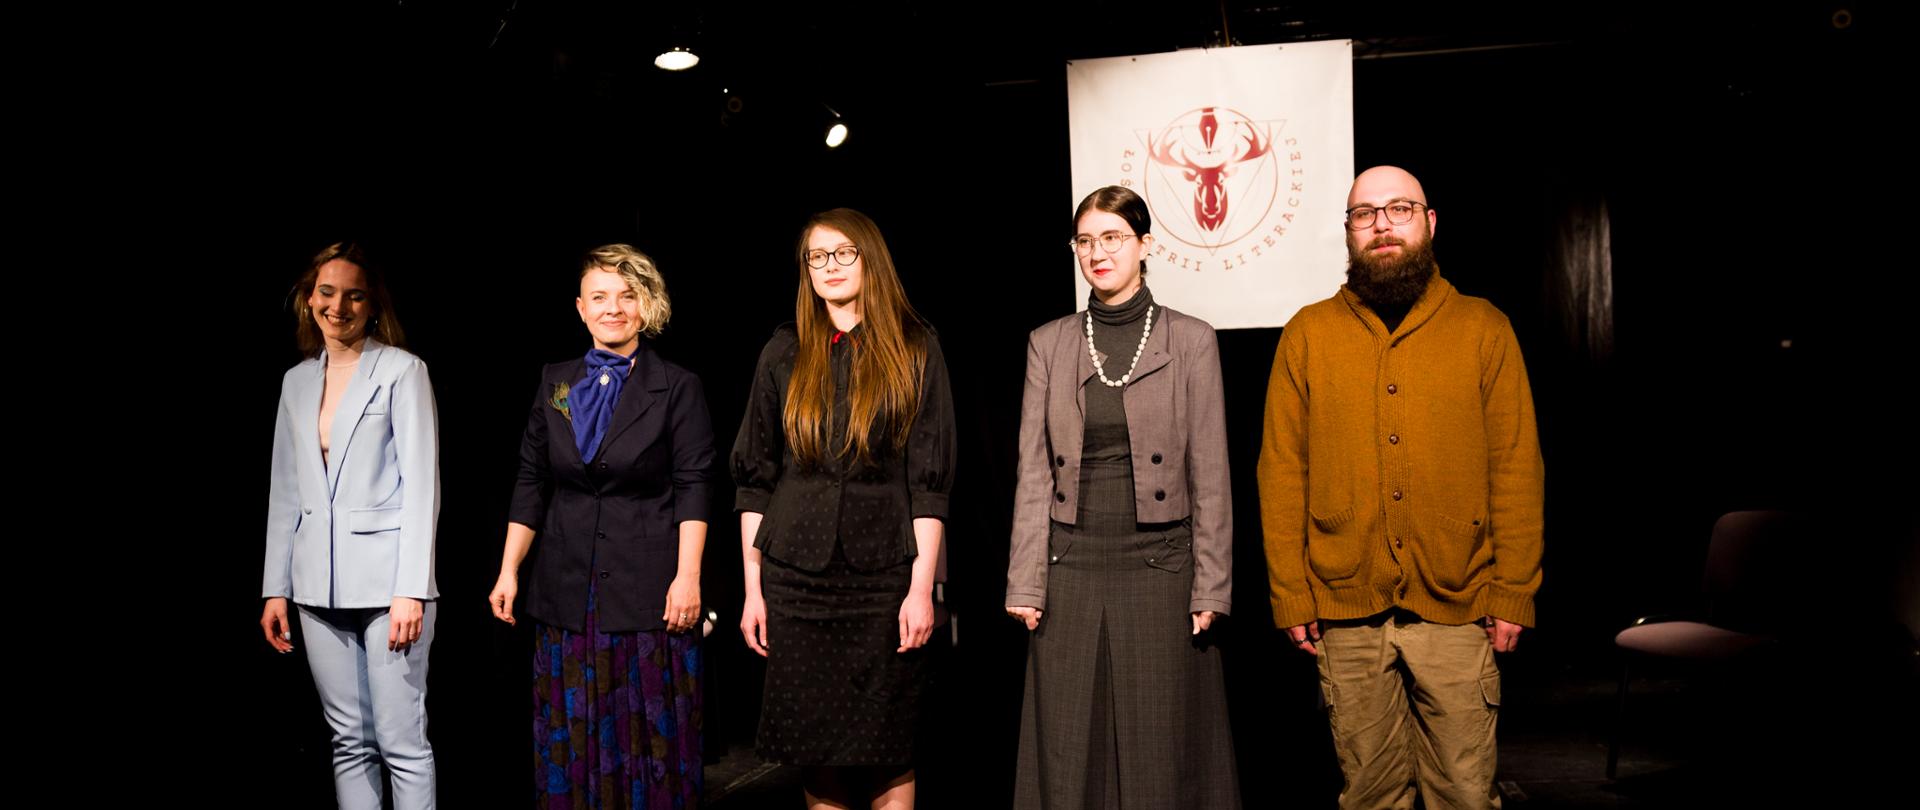 Pięcioro aktorów stojących na czarnej scenie teatralnej po spektaklu. 